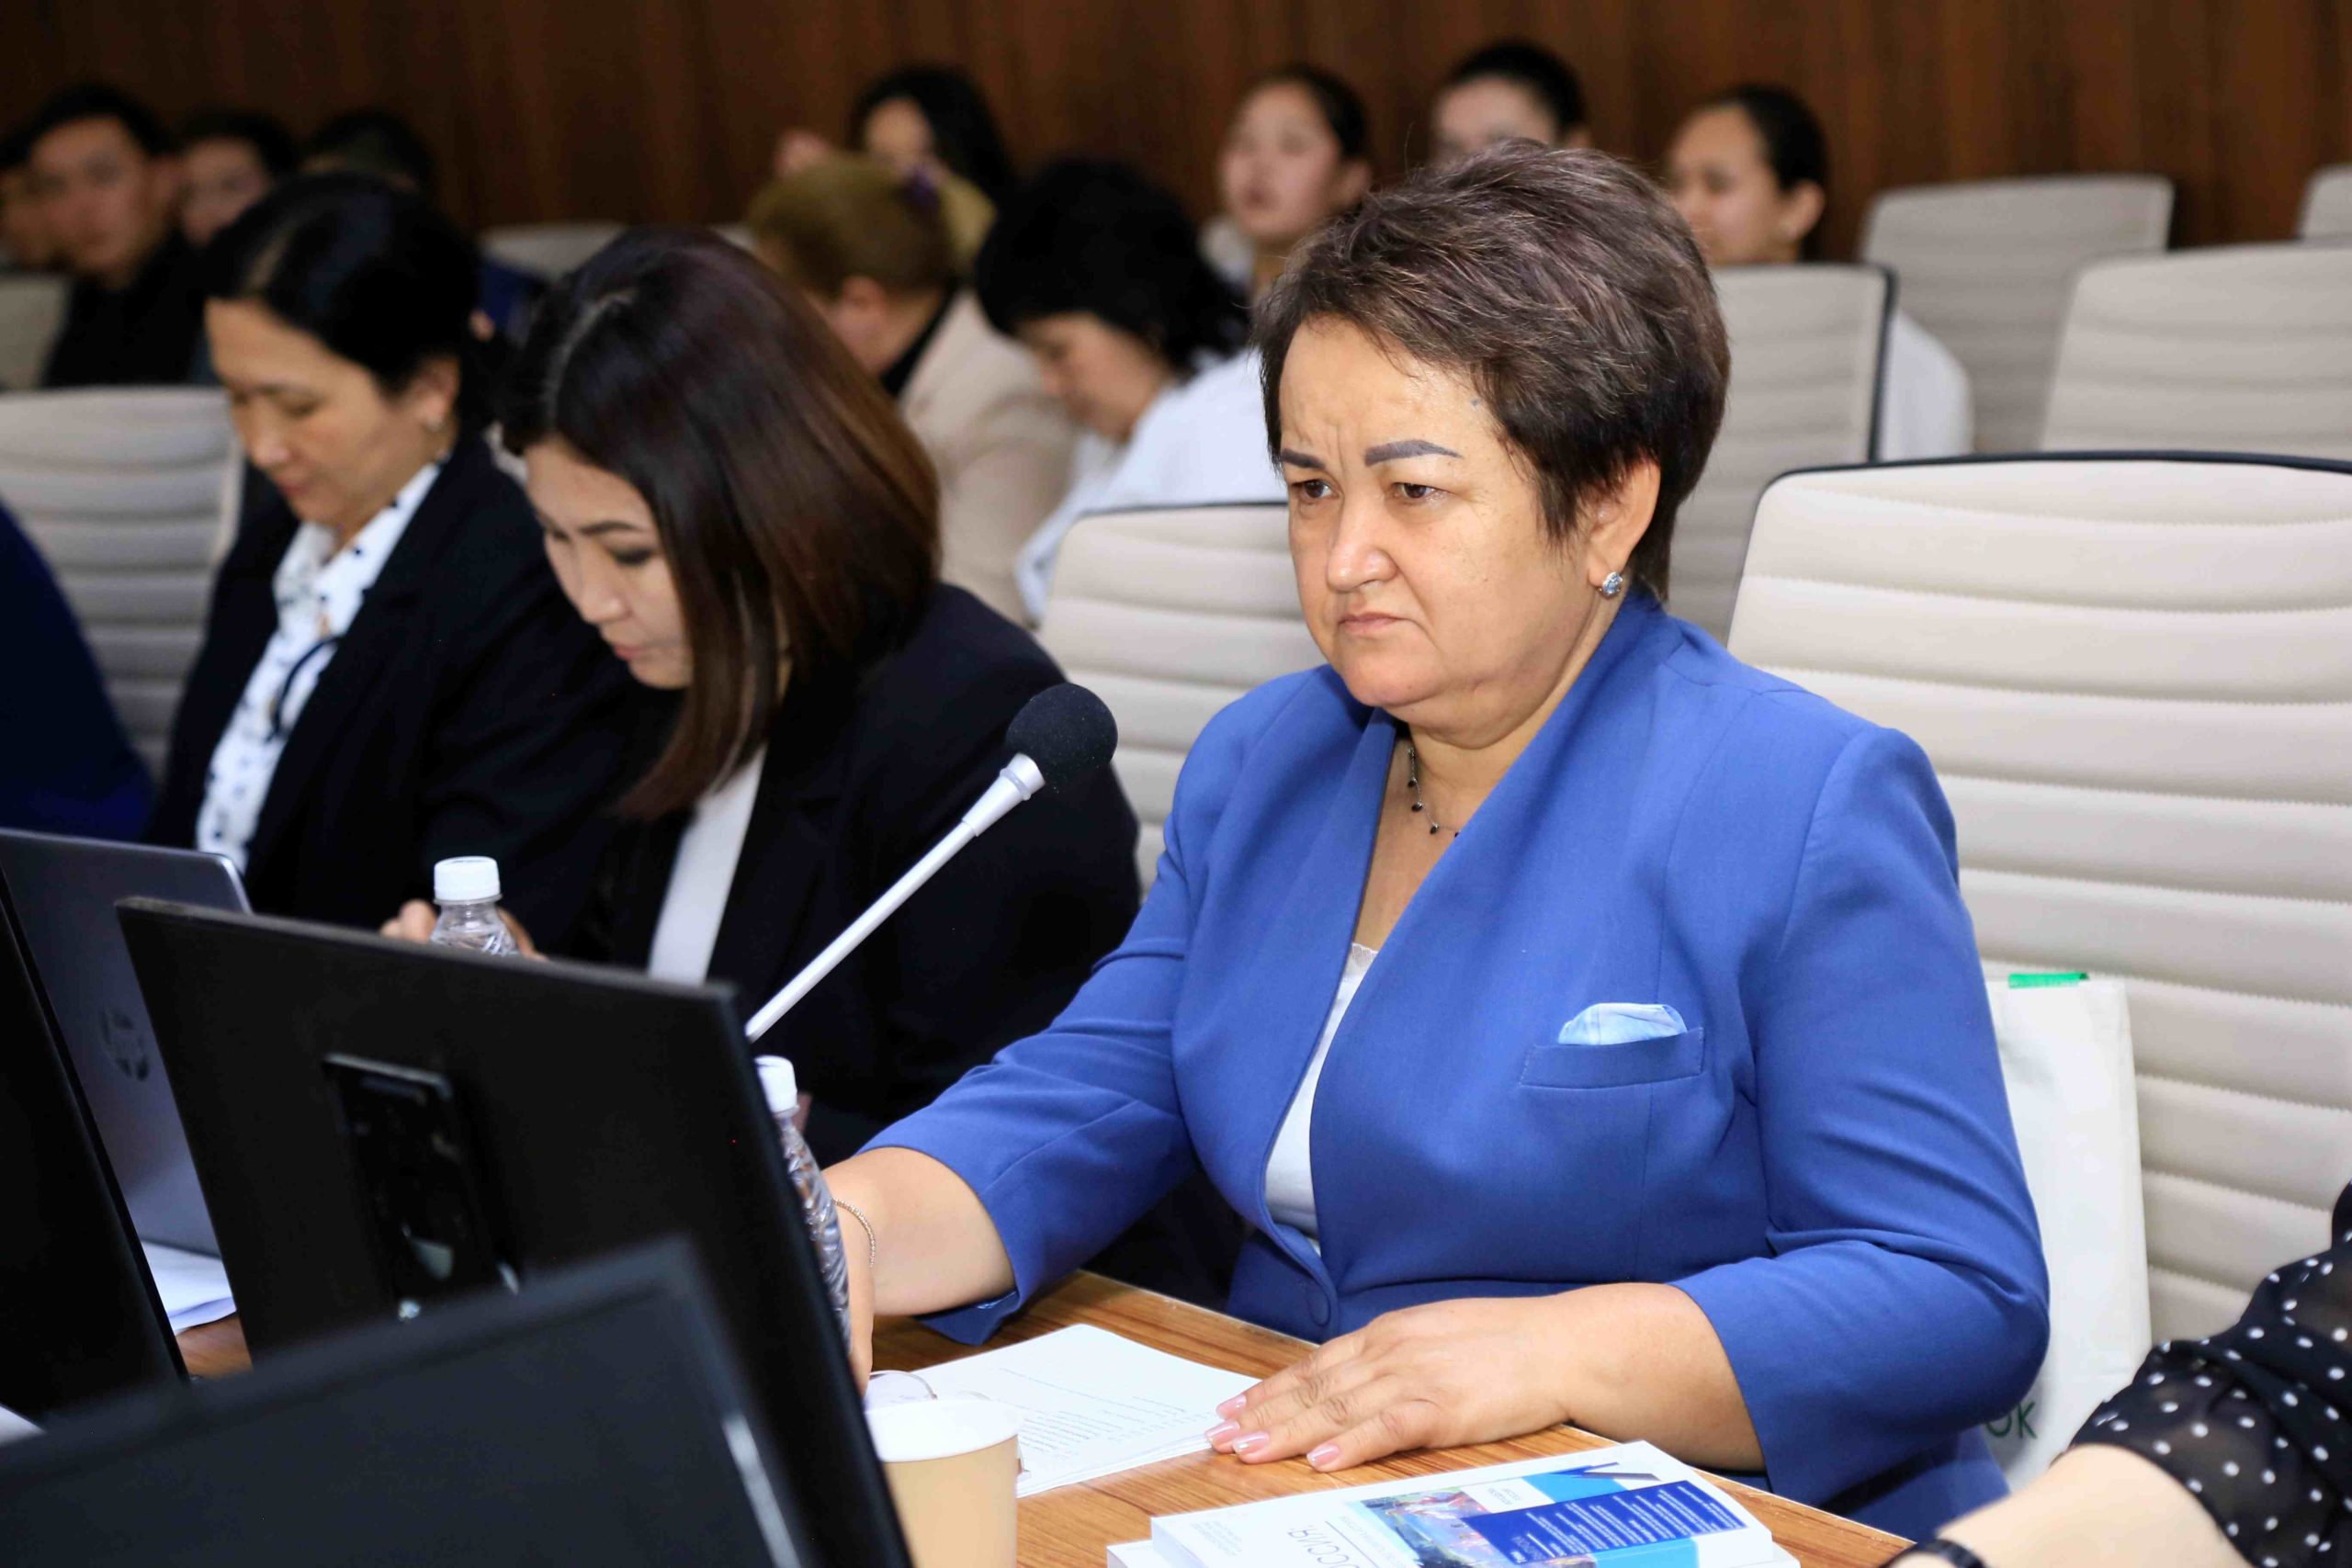 НИИРК – При поддержке НИИРК подведены итоги Национального конкурса лучших курсовых и выпускных работ среди студентов ВУЗов Кыргызстана